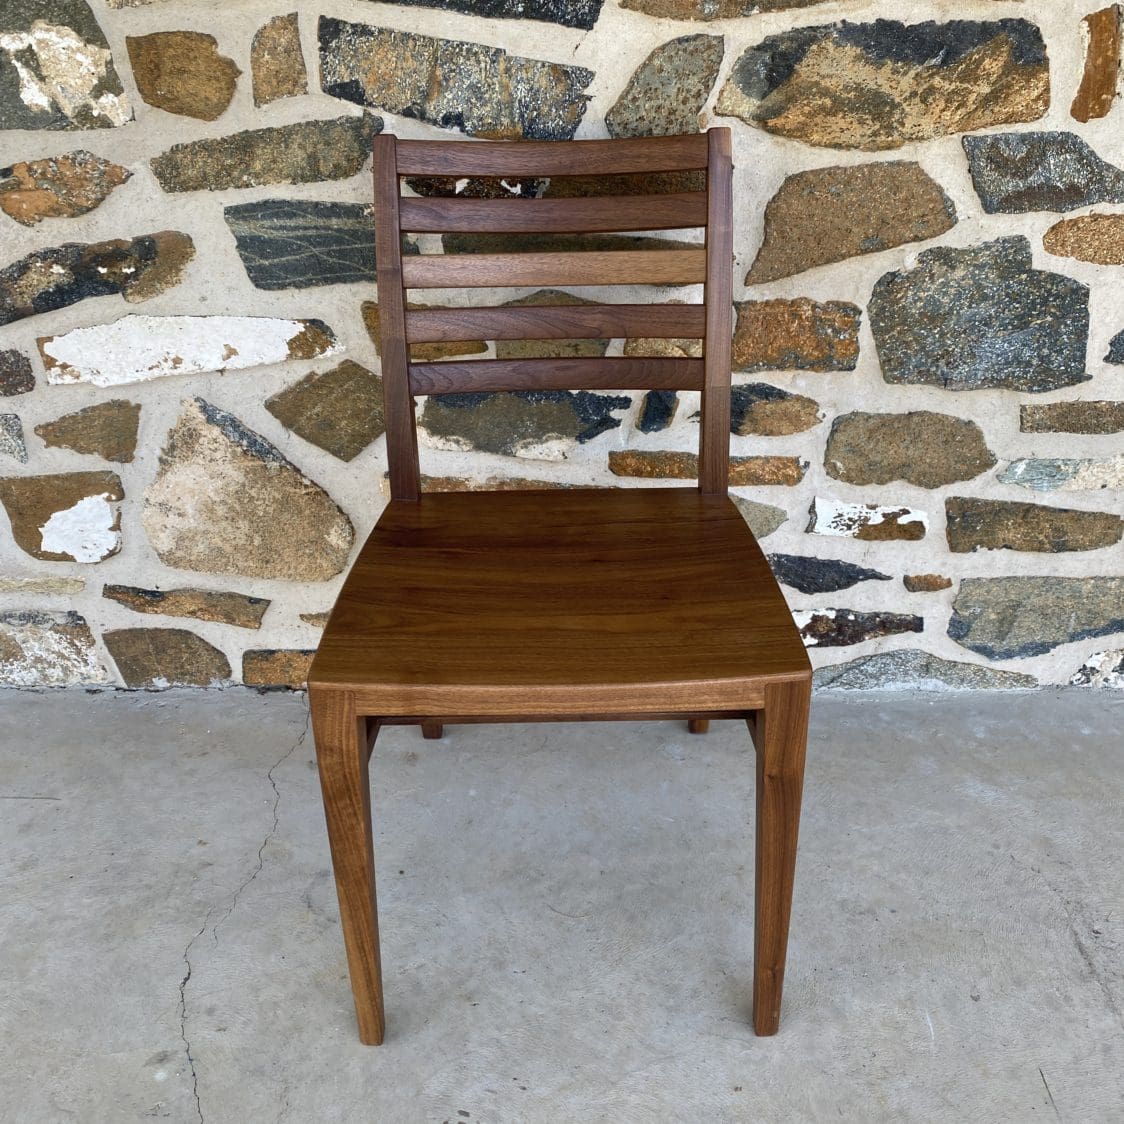 Rettew Chair in walnut wood